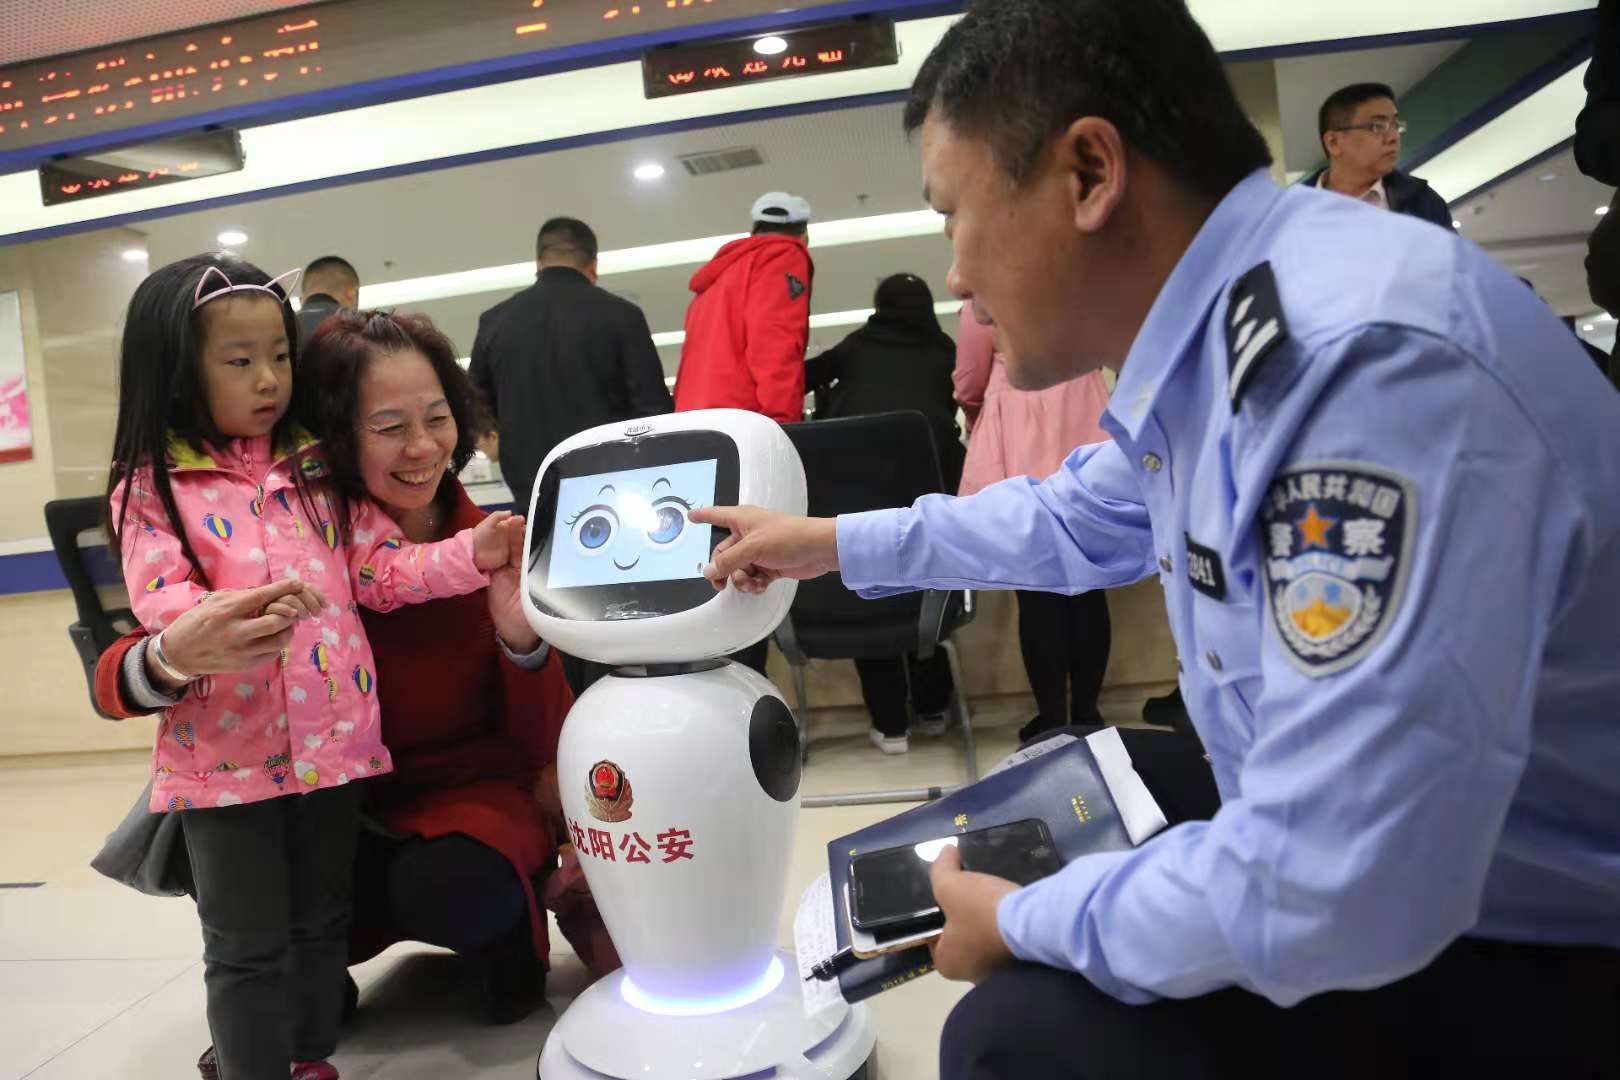 沈阳:机器人警察亮相窗口为办事群众服务